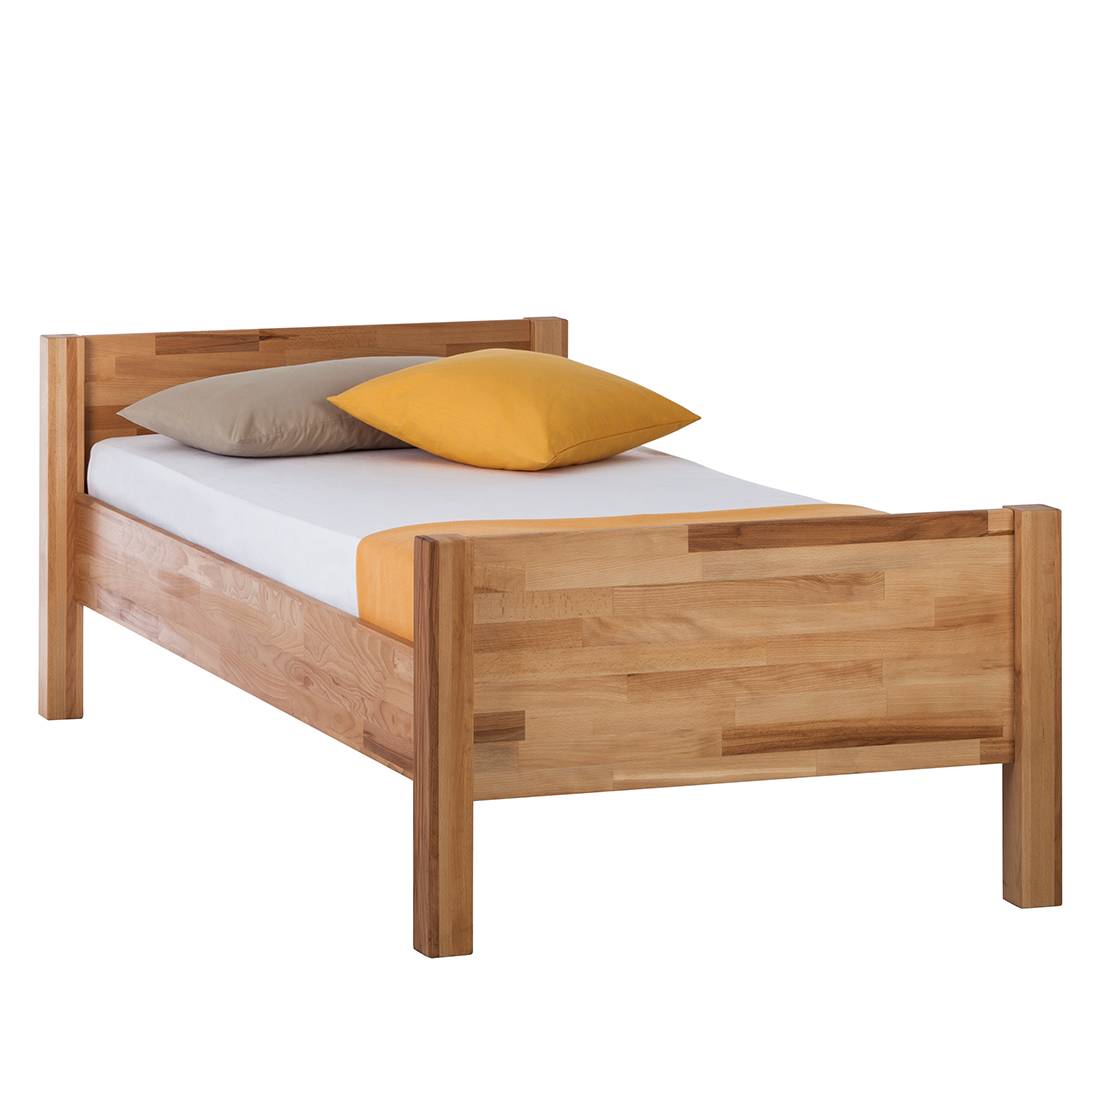 Massief houten bed kopen | home24